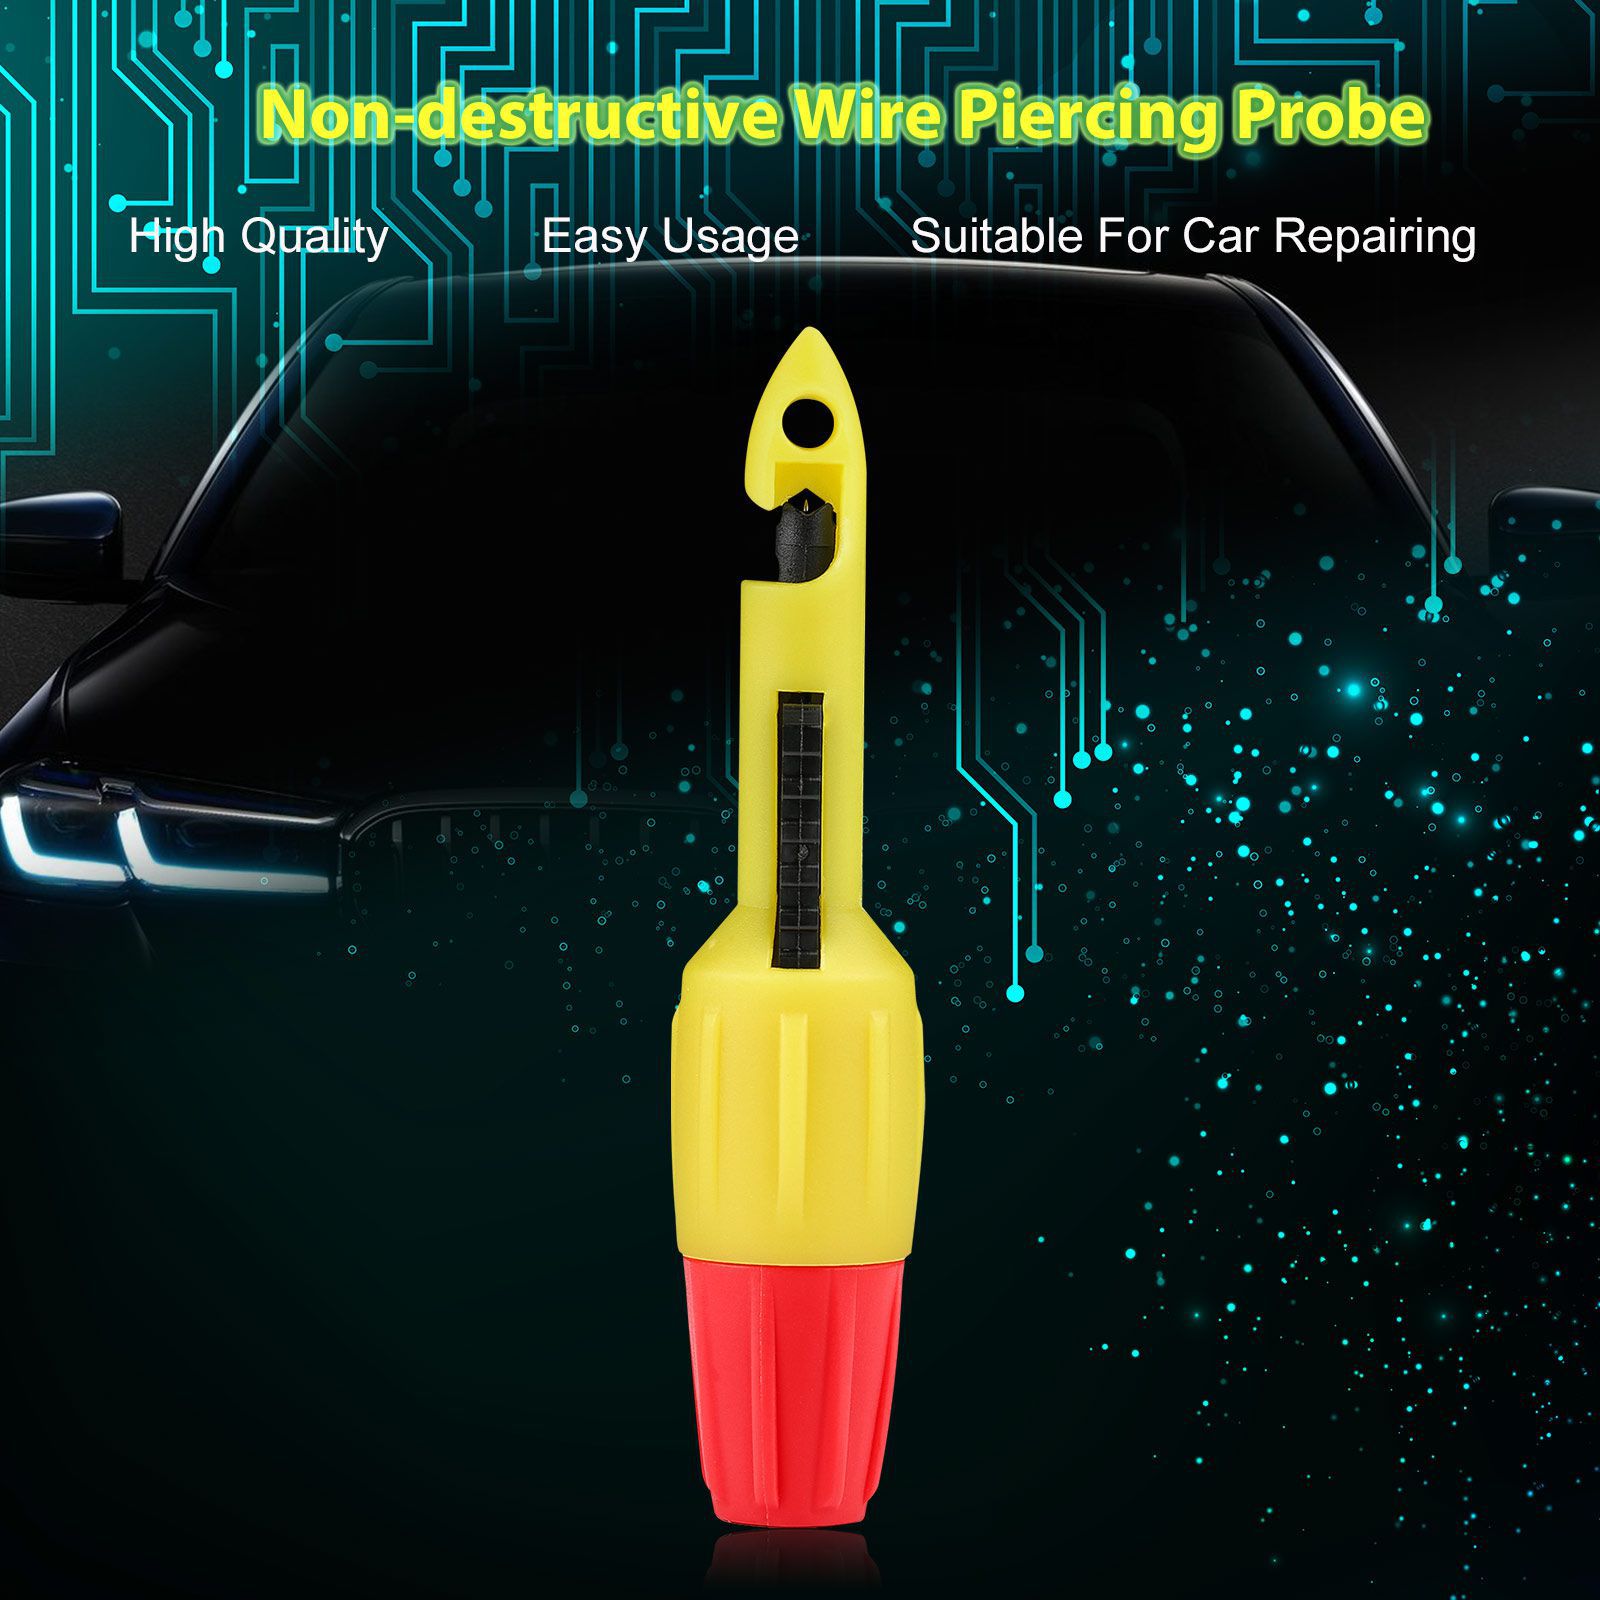 Draht Piercing Probe Piercing Clip 4mm Bananenstecker mit 4mm Automotive Test Leads Kabel Piercing Probe Set Arbeit mit Godiag GT101/GT102/GT103